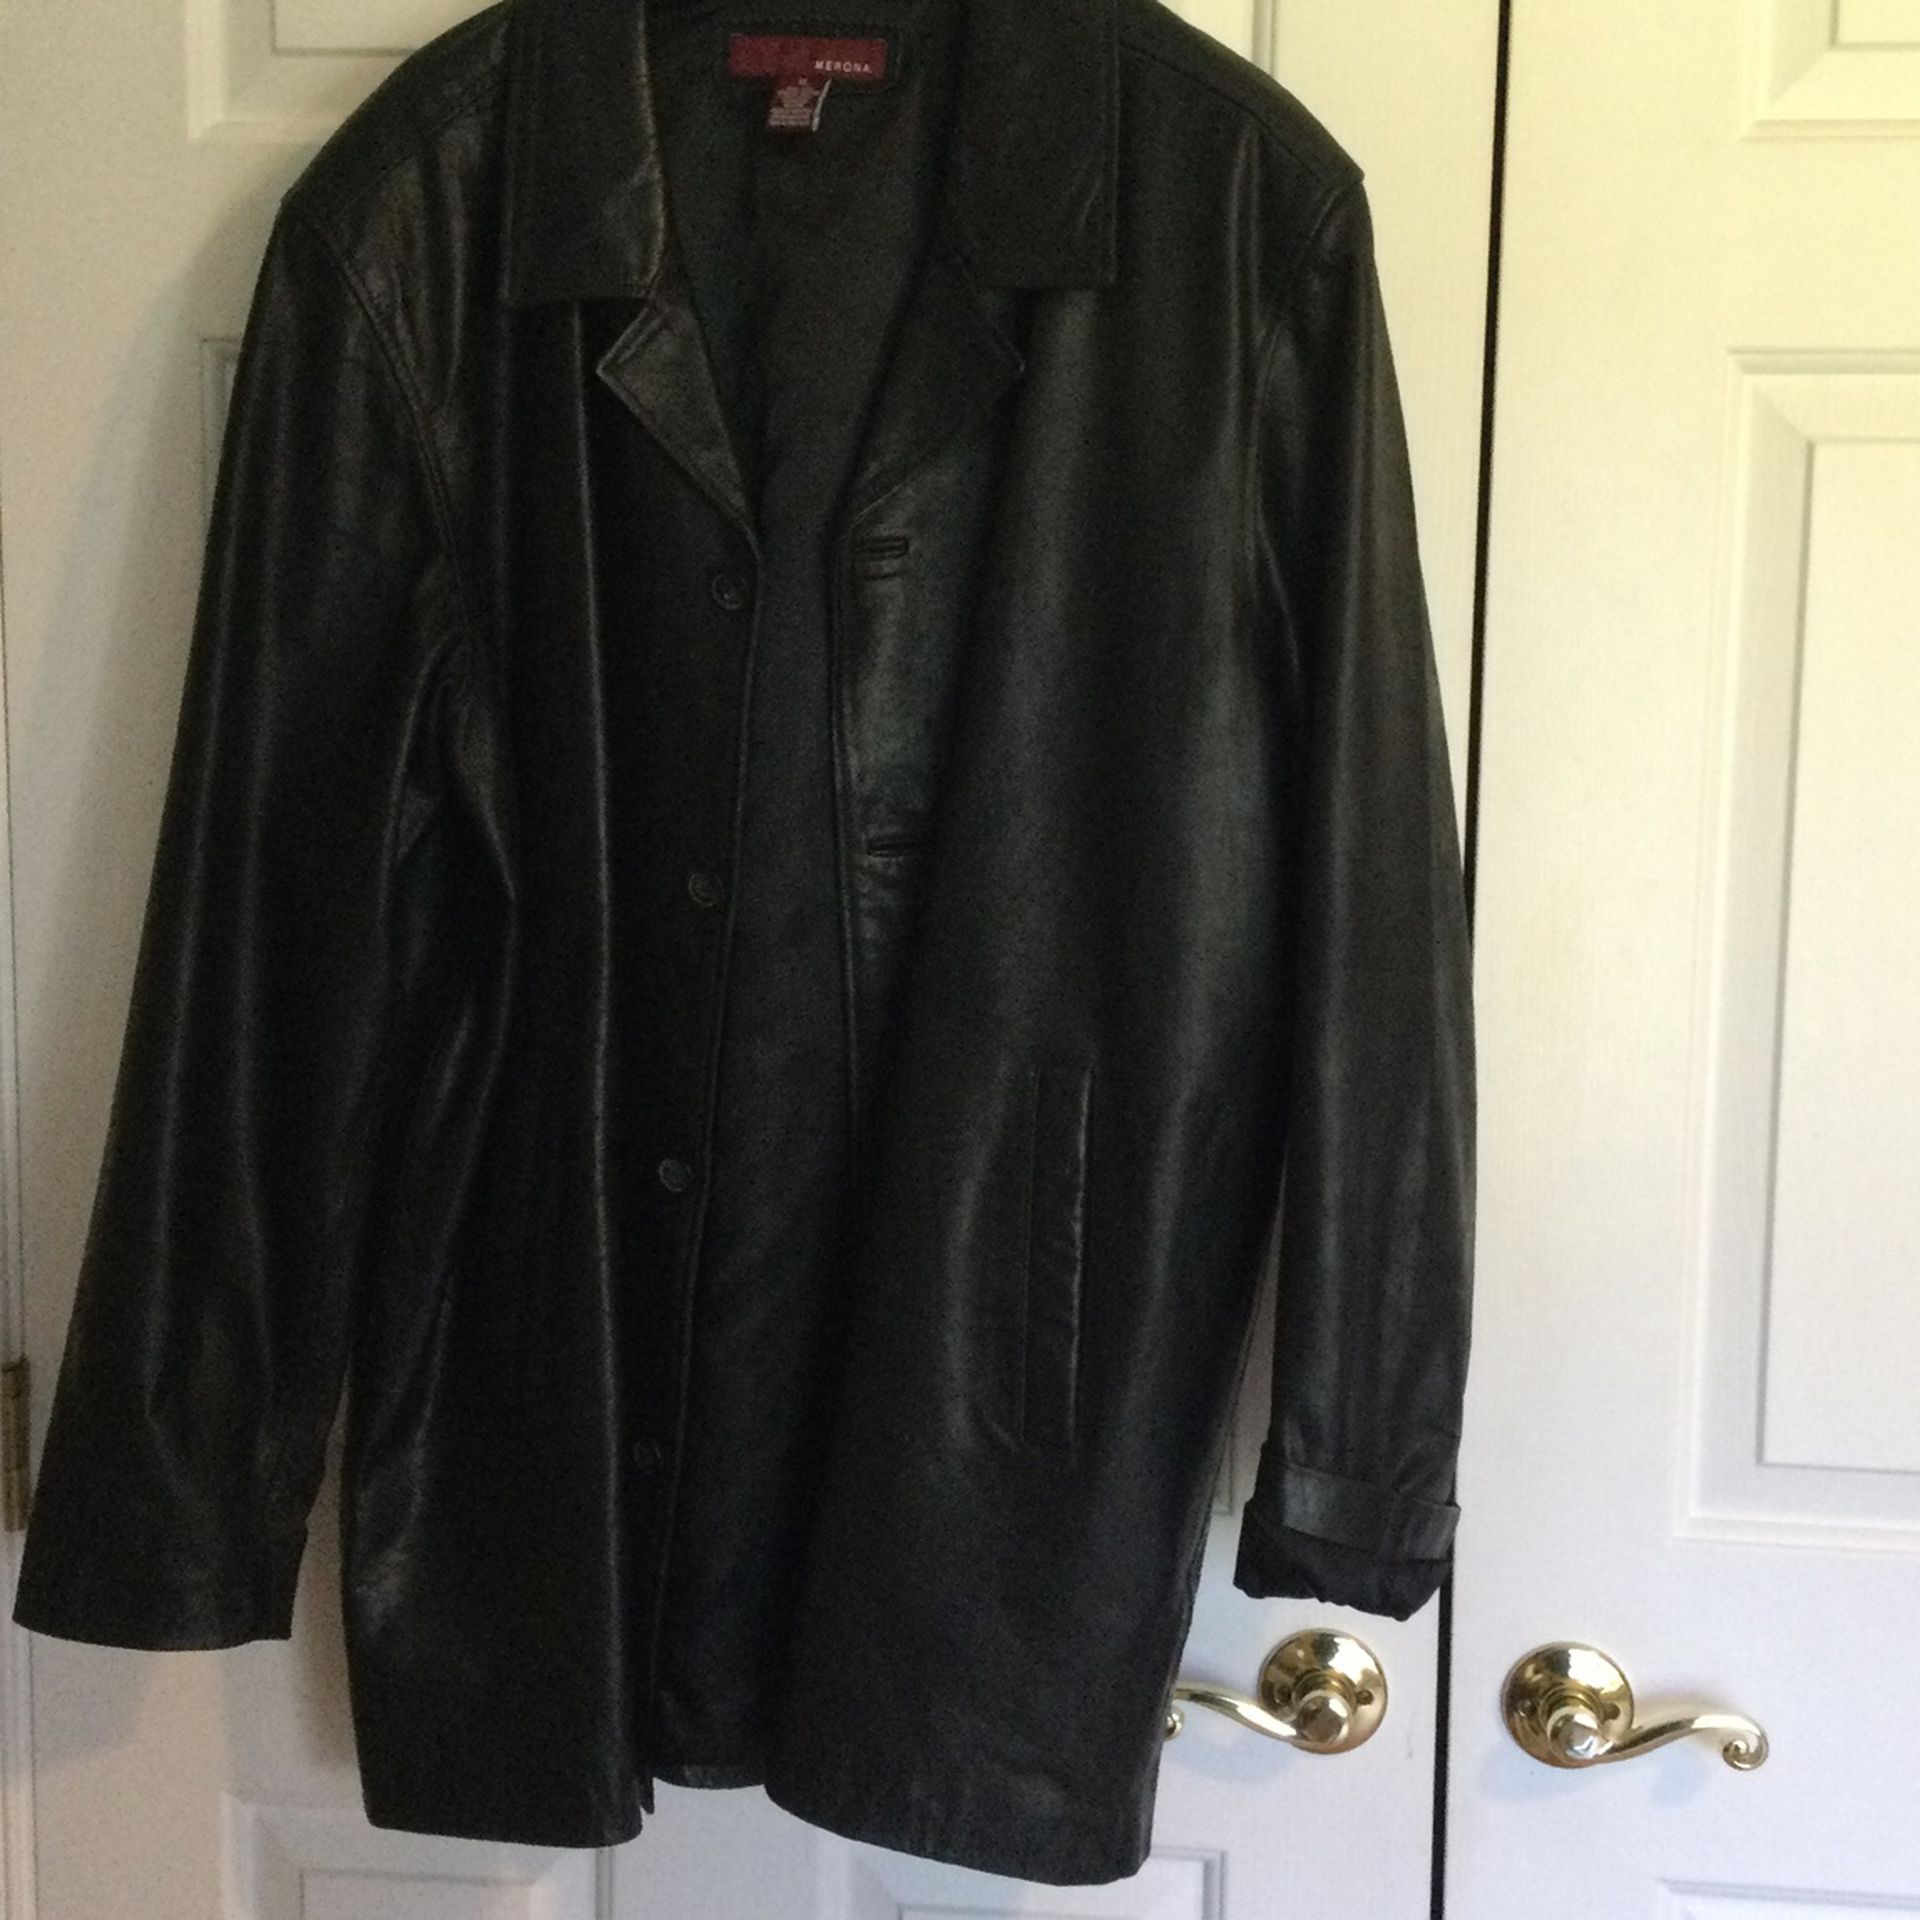 Leather blazer style jacket